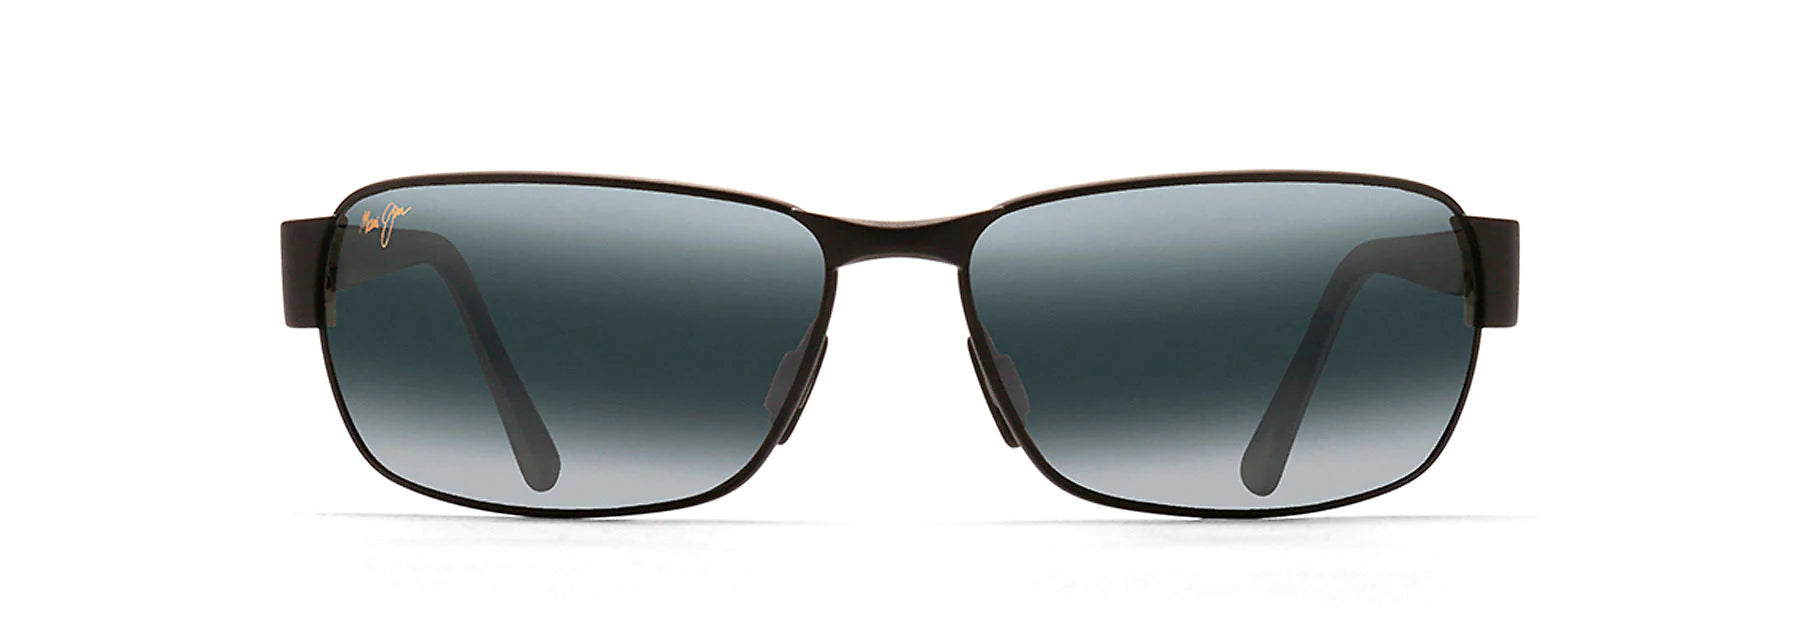 Black Coral Polarized Sunglasses 249-2M